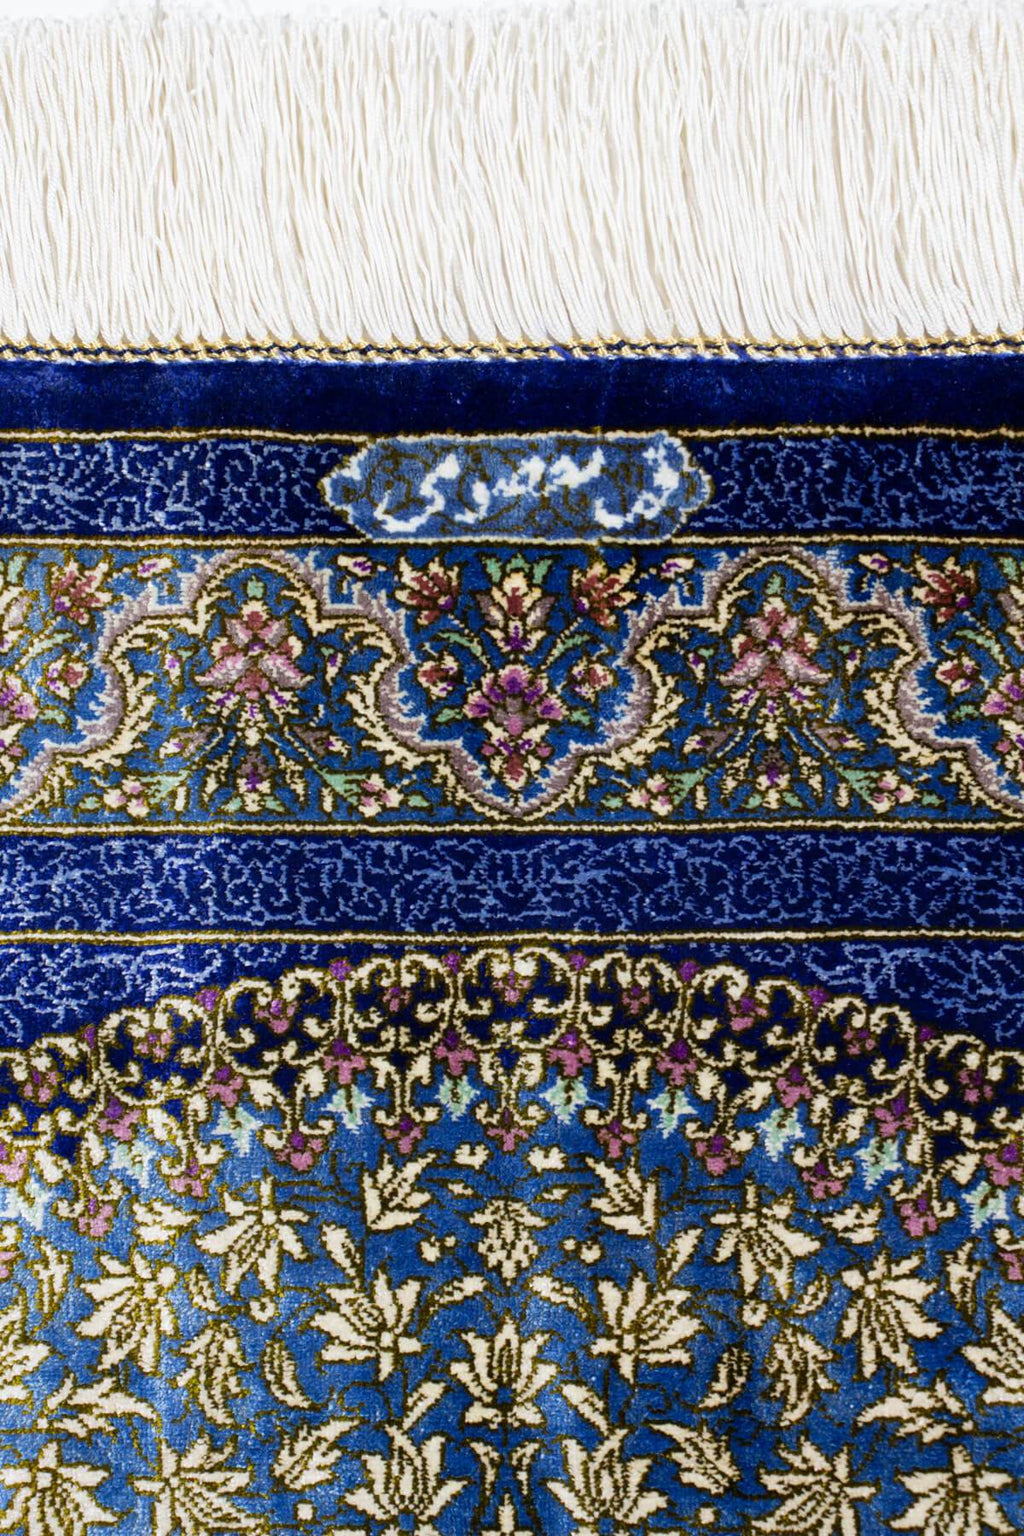 マスミ工房 ペルシャ絨毯(78x115cm)青 ブルー シルク【絨毯専門店】